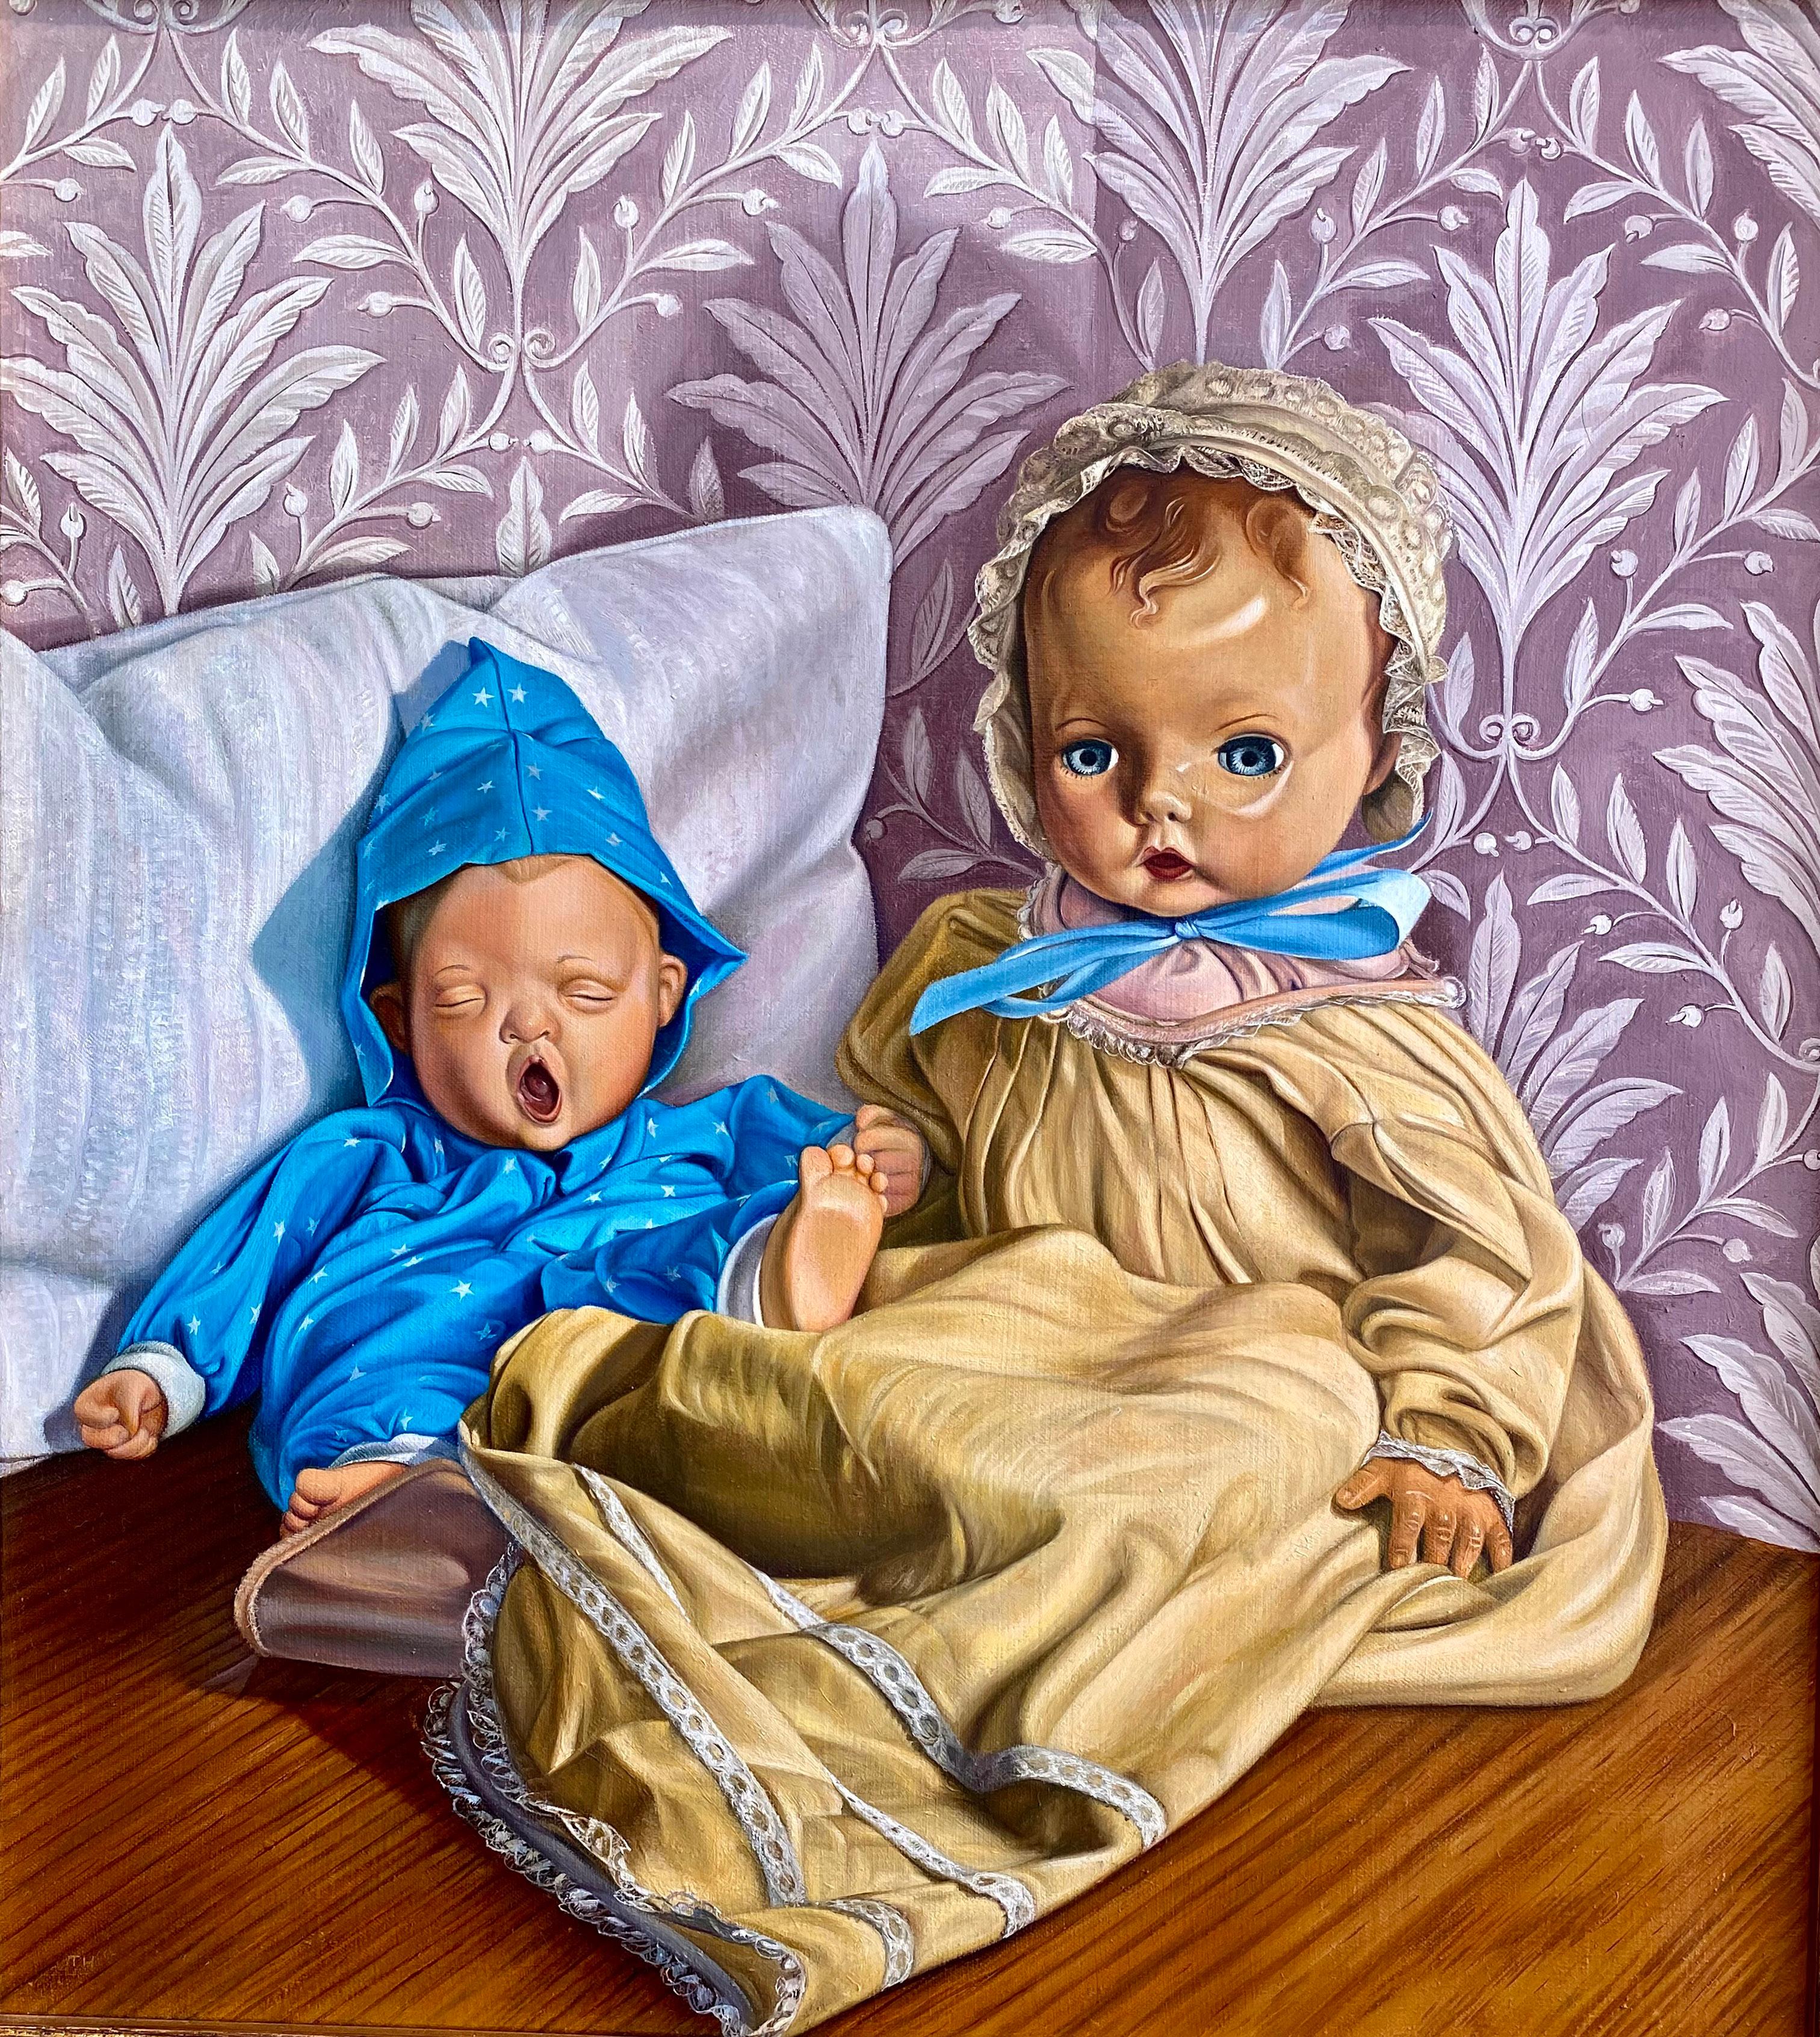 sid et Nancy" de l'artiste américain Thomas Hoffman, huile sur lin, 20 x 18 pouces. Cette peinture photoréaliste représente une poupée antique assise à côté d'un bébé qui baille sur un fond de vieux papier peint décoratif. Elle est encadrée dans un